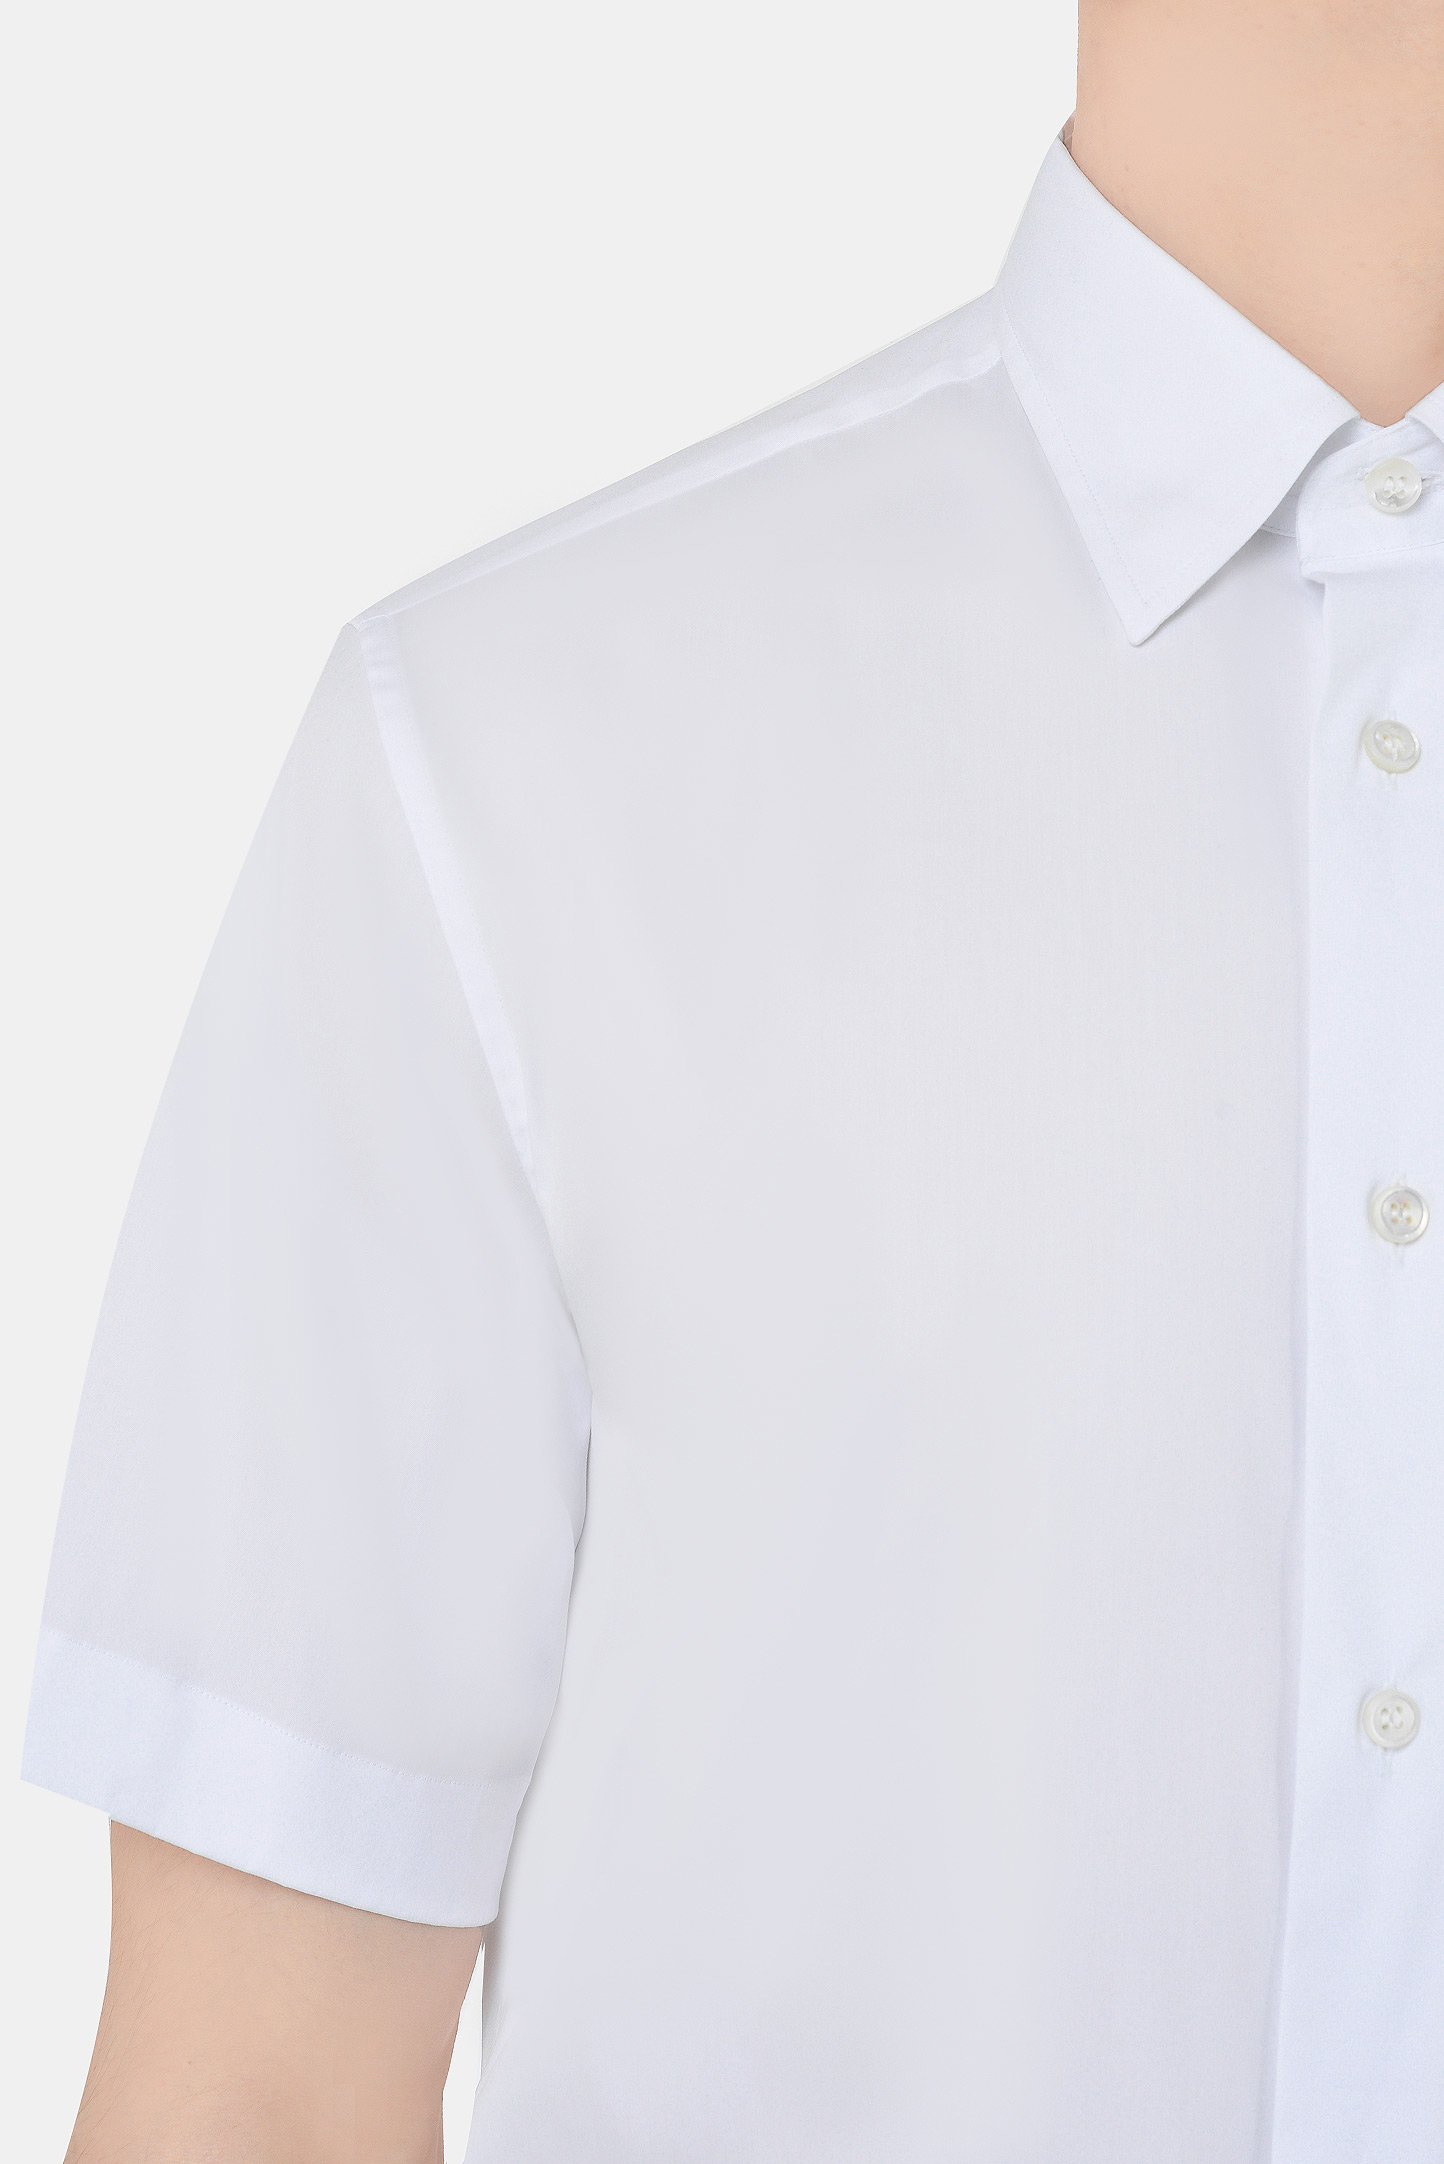 Рубашка BRIONI SCDF0L O8010, цвет: Белый, Мужской